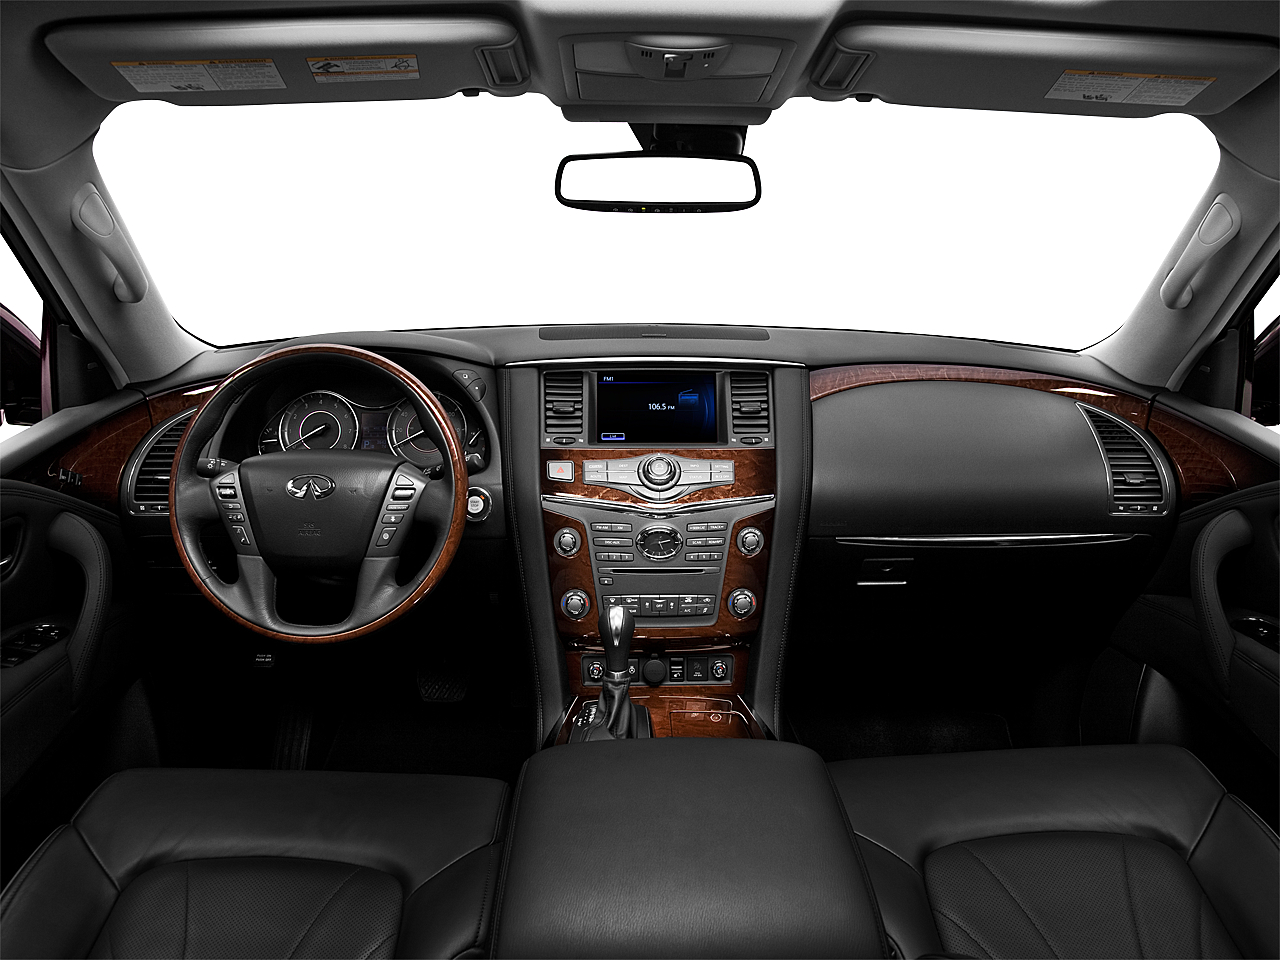 إنفينيتي QX56 interior - Cockpit